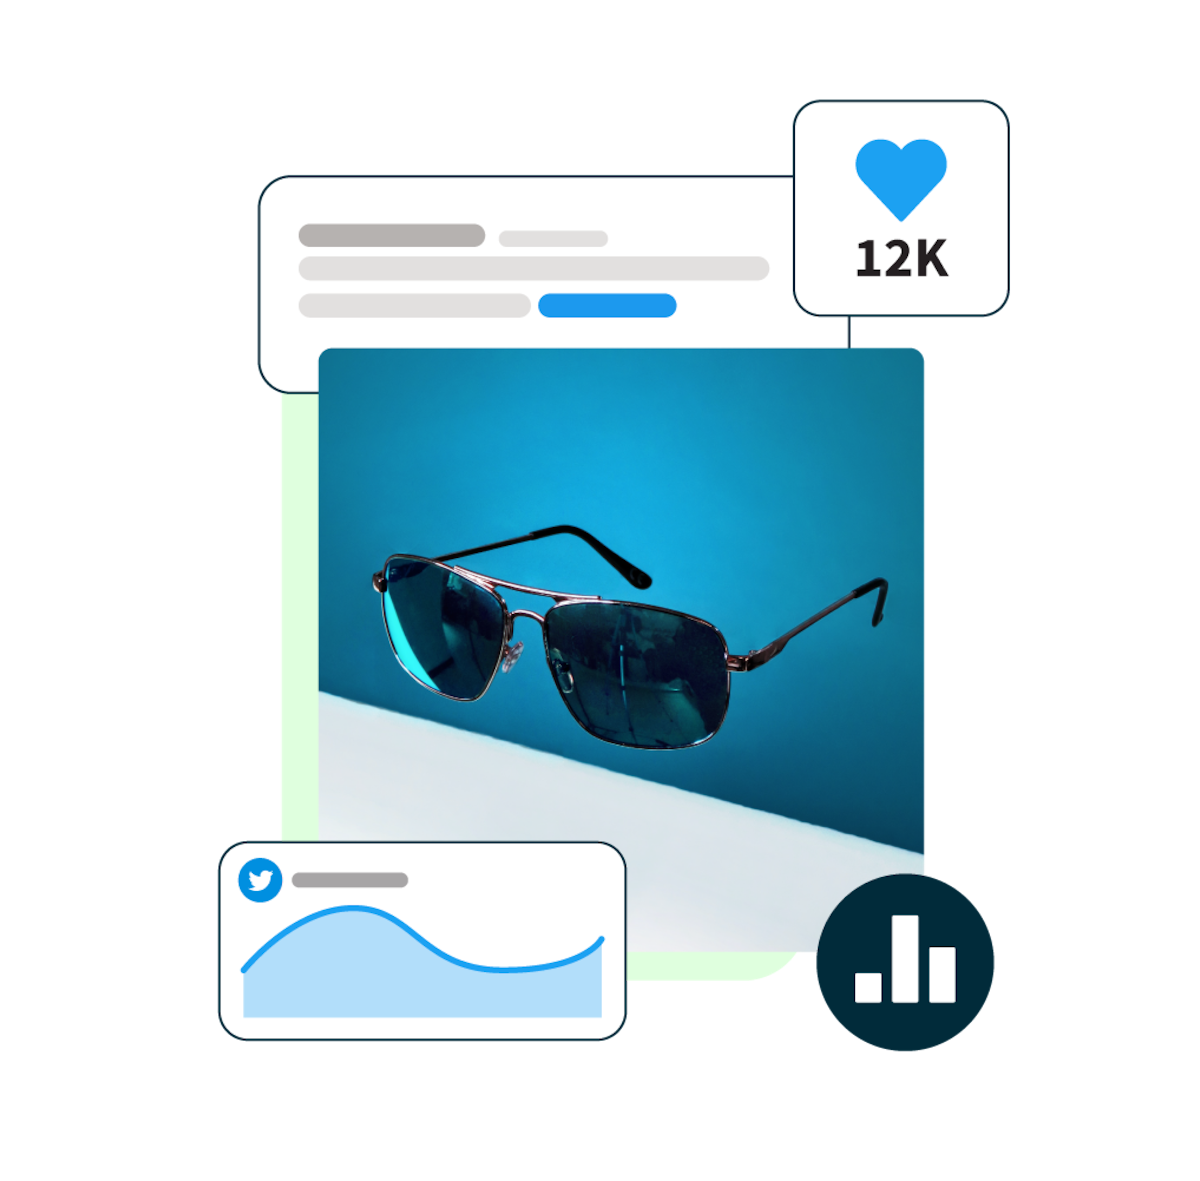 image de lunettes de soleil flottant sur un fond bleu, entourée de fenêtres pop-up de statistiques sur les médias sociaux